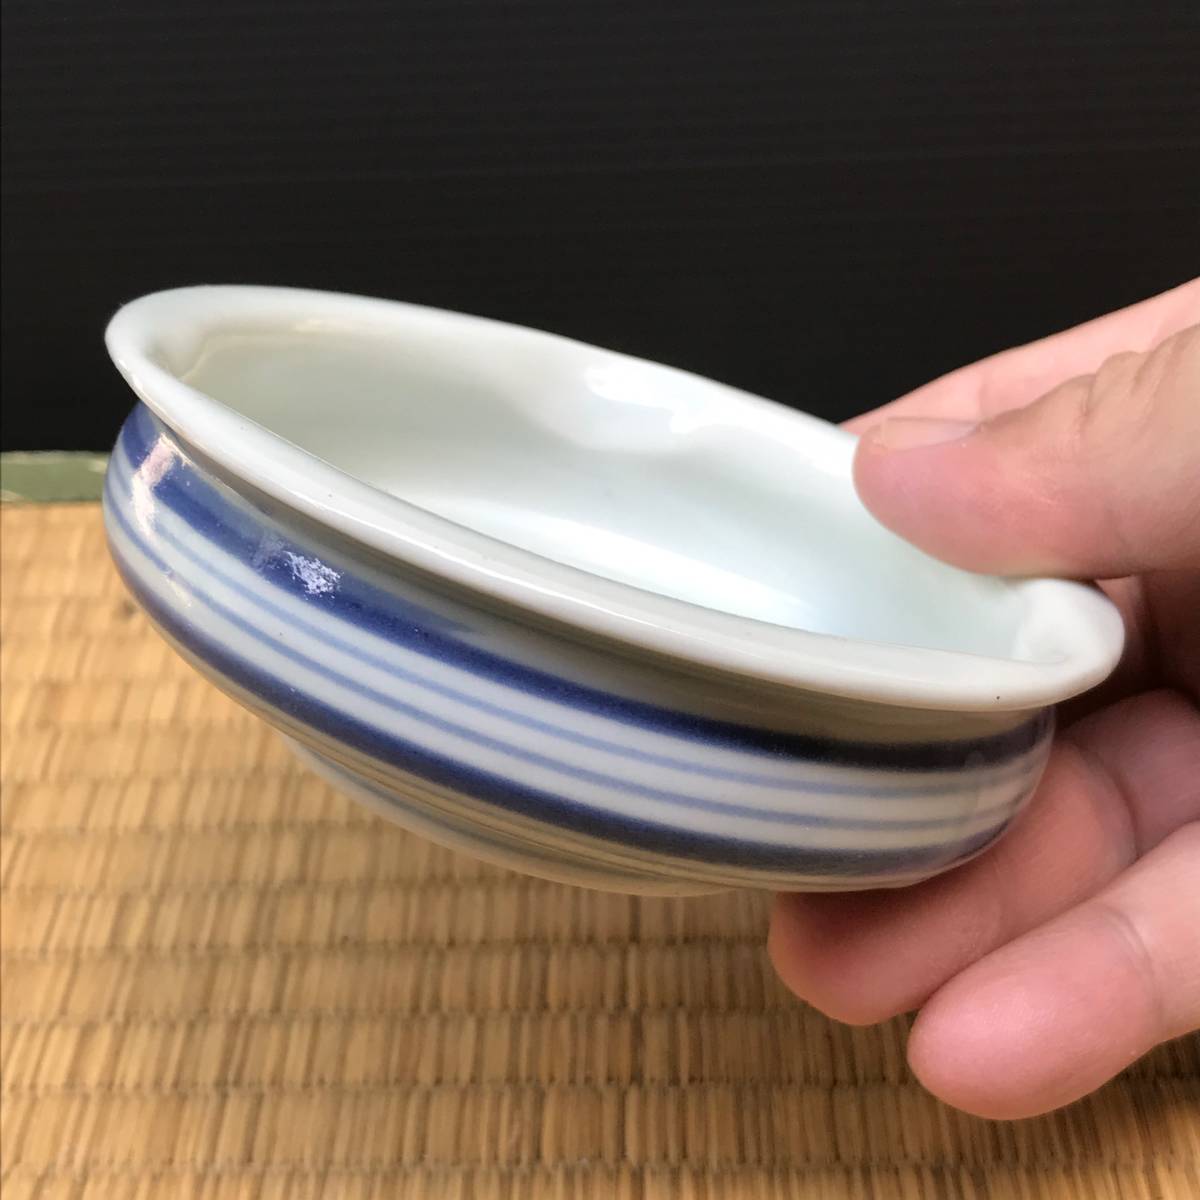  Imari width ... censer? ashtray?(.). mountain person . seal? small plate, small bowl delicacy inserting blue and white ceramics old Imari (R50726_A)